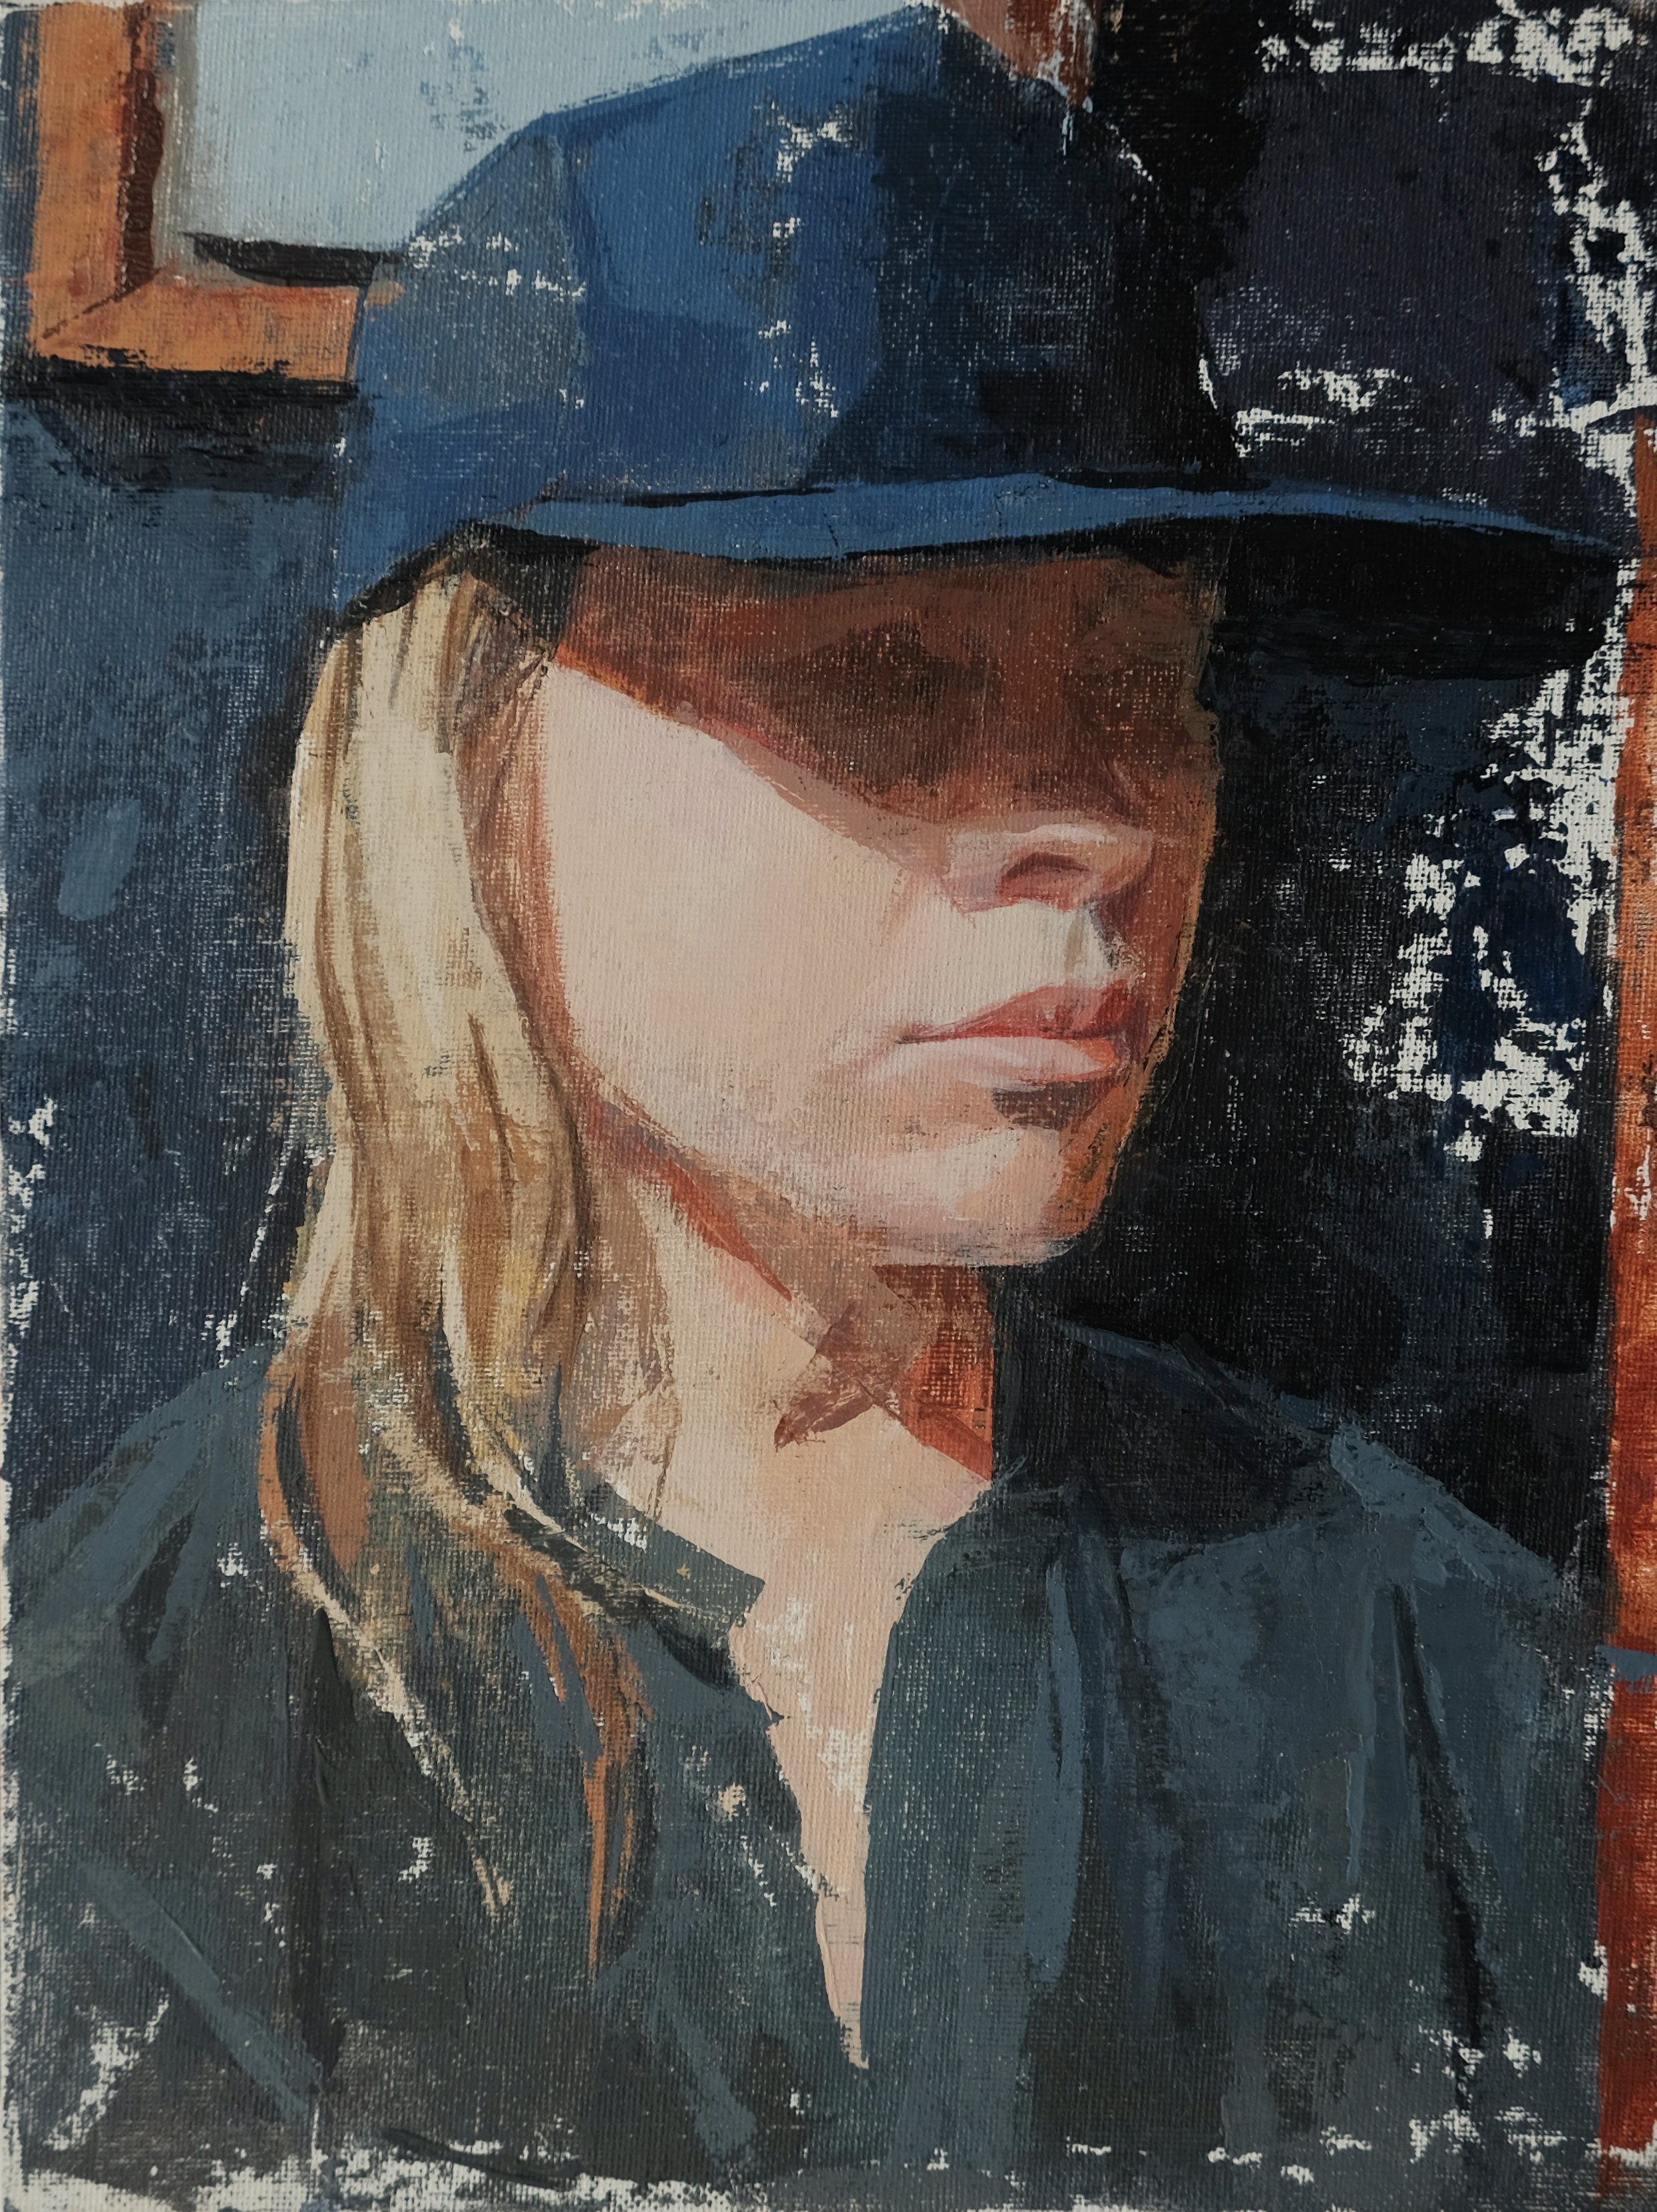 AH in Blue Hat acrylic on 9x12 canvas board amy scherer.JPG